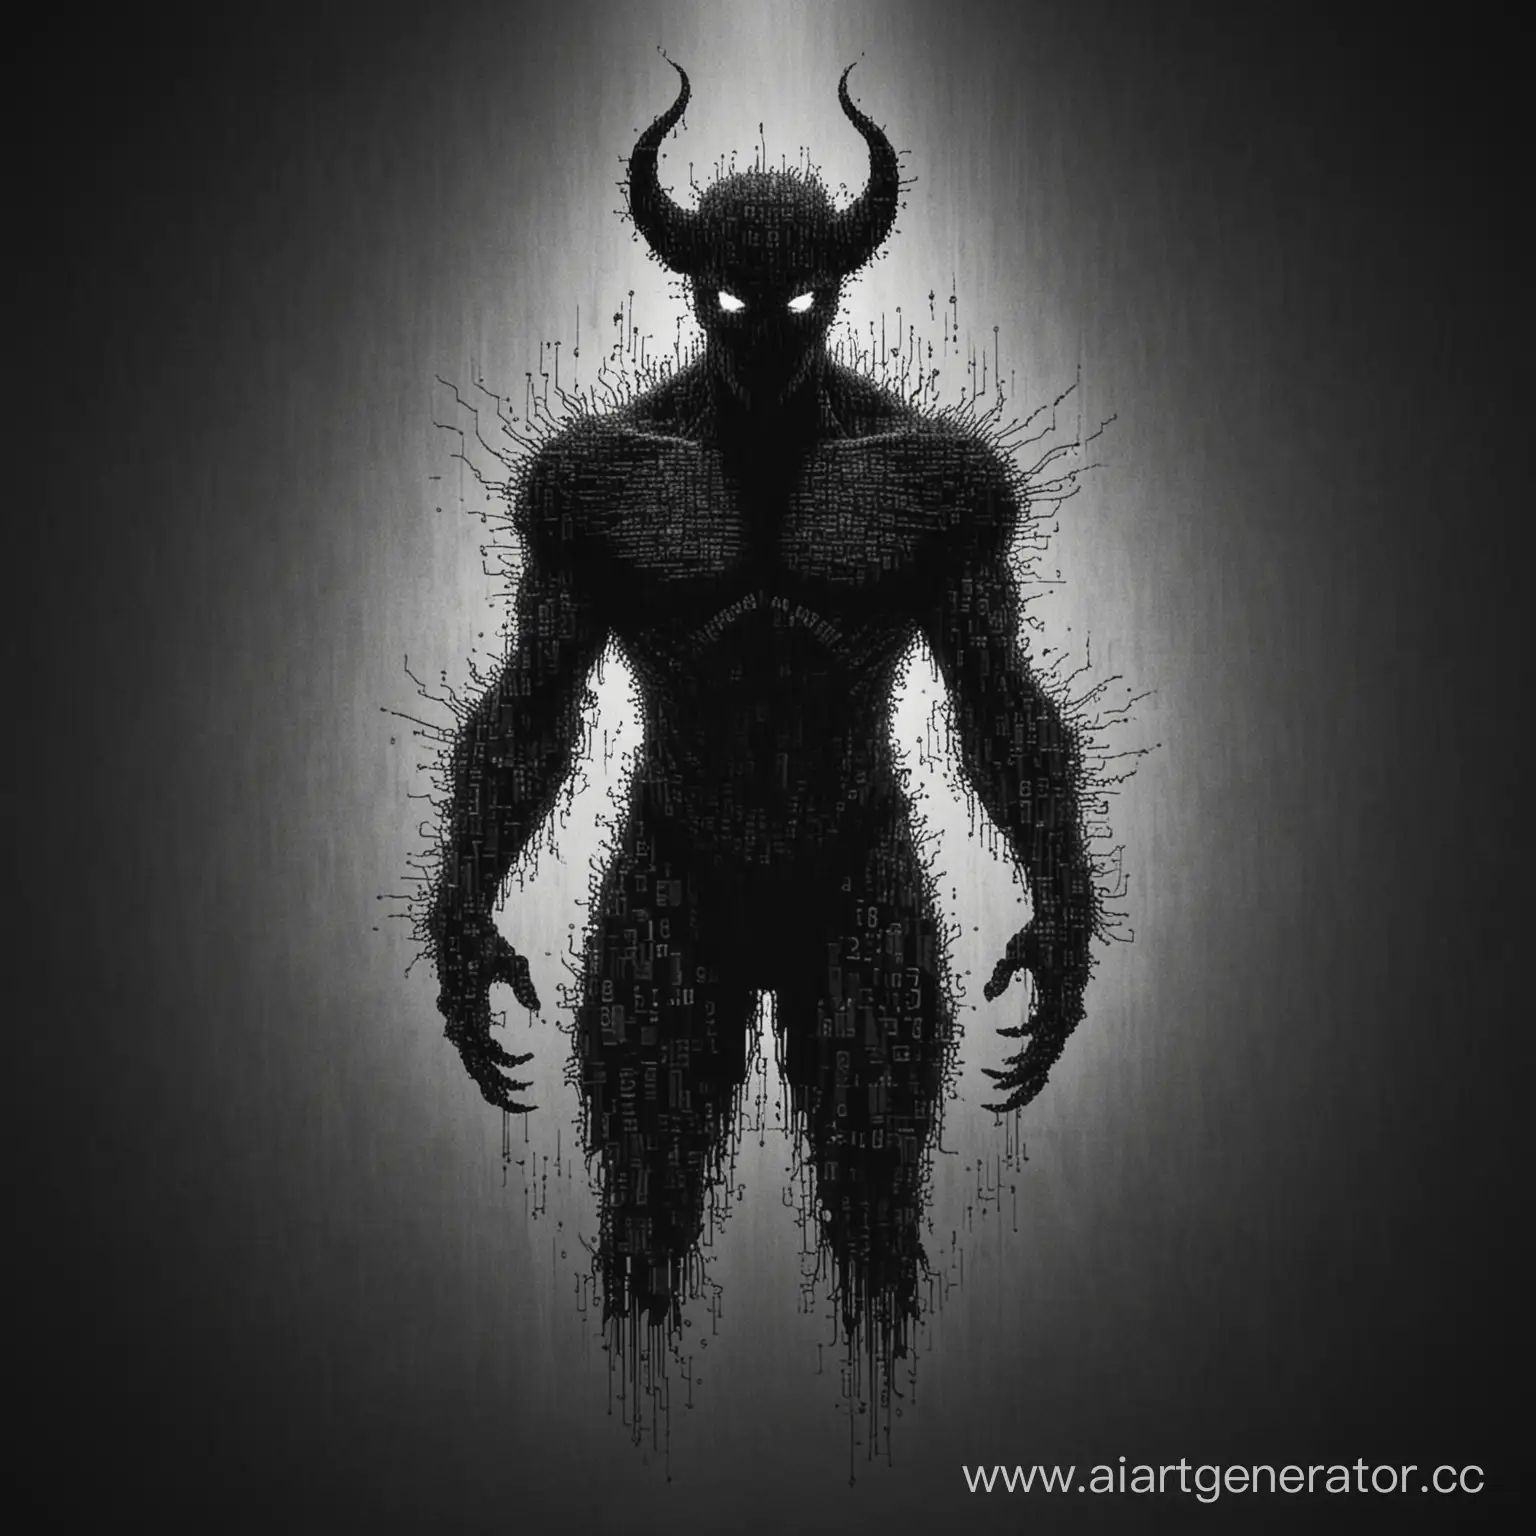 Абстрактное изображение силуэта демона, состоящего из кода или цифр